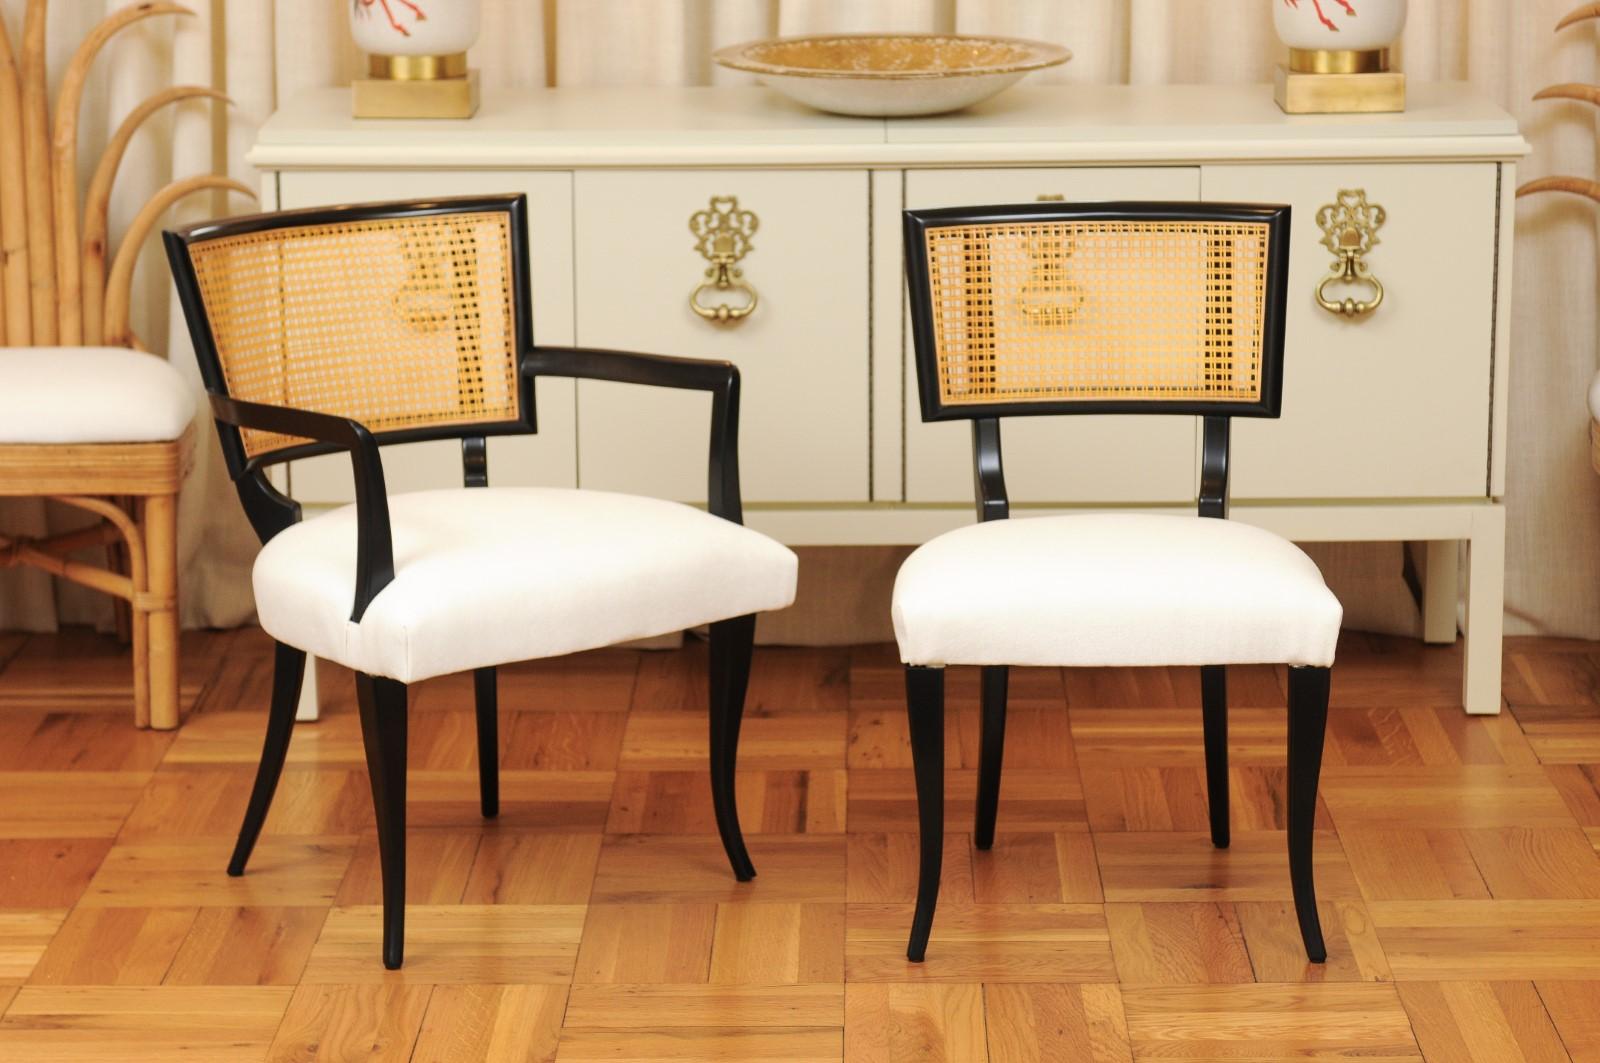 Ces magnifiques chaises de salle à manger sont expédiées telles qu'elles ont été photographiées par des professionnels et décrites dans le récit : elles ont été méticuleusement restaurées par des professionnels et sont prêtes à être installées. Un